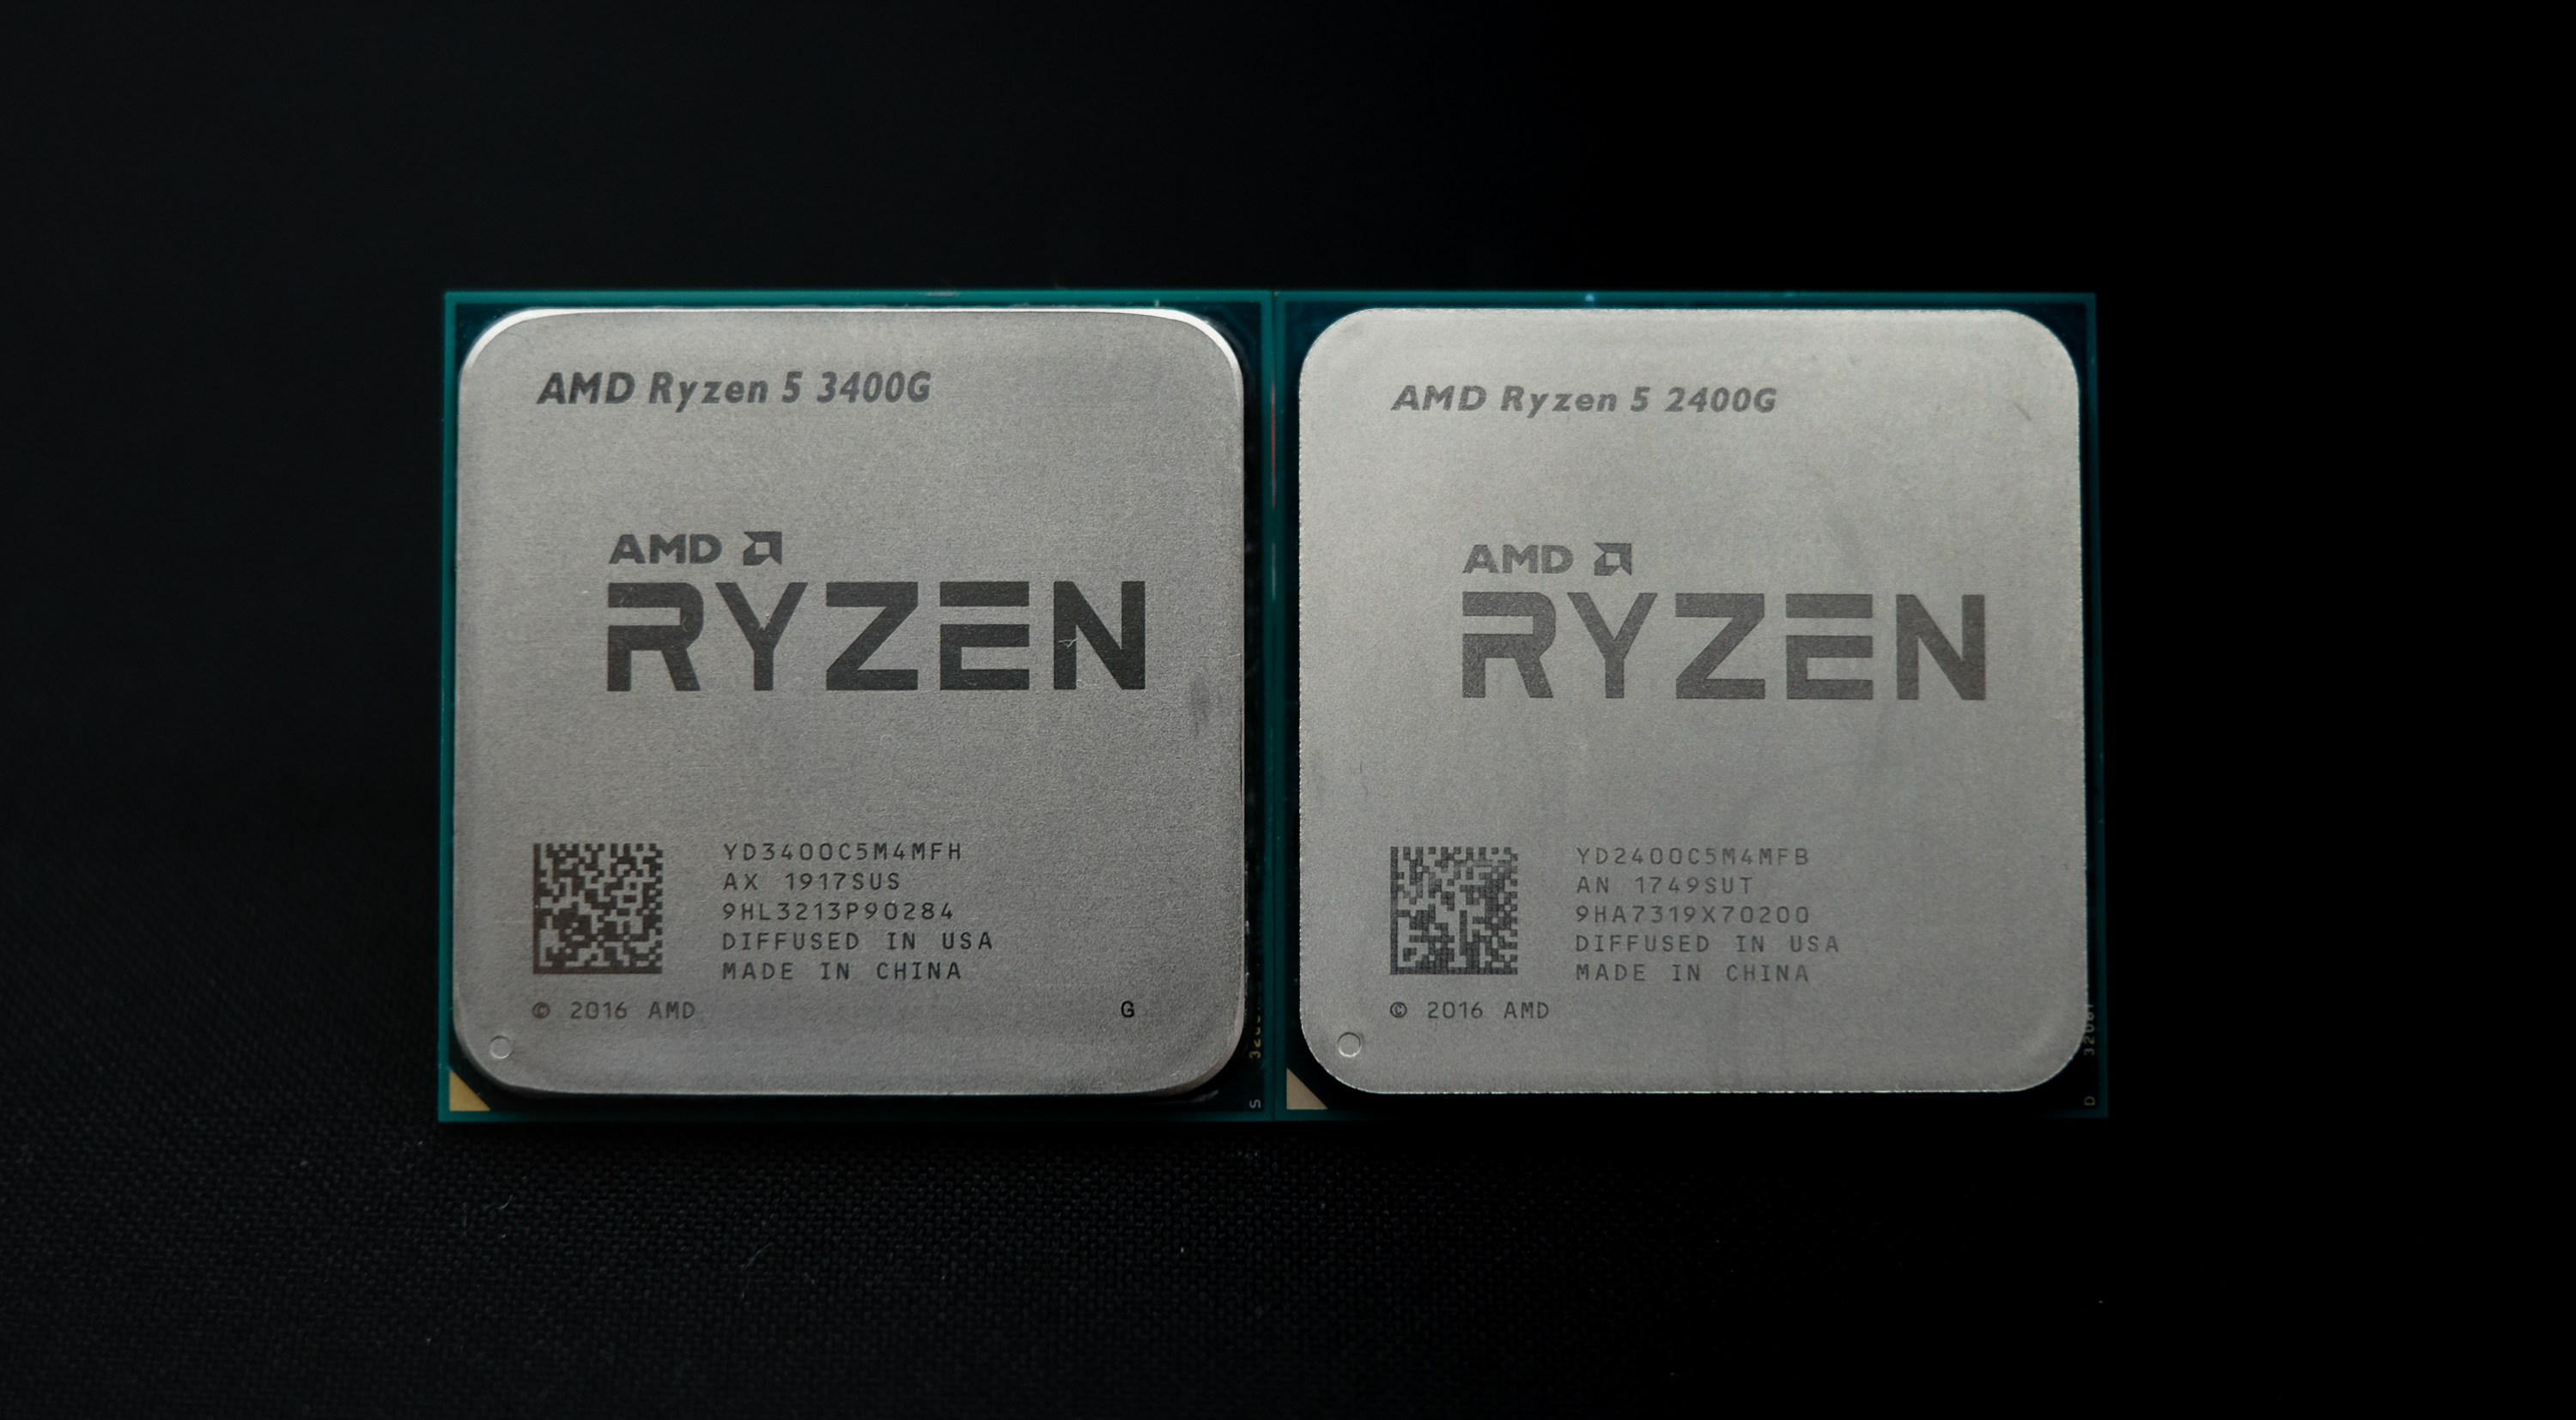 5 3400g купить. Процессор АМД райзен 5 3400g. Райзн 3400g. AMD Ryzen 5 3400g am4, 4 x 3700 МГЦ. AMD Ryzen 5 3400g характеристики.